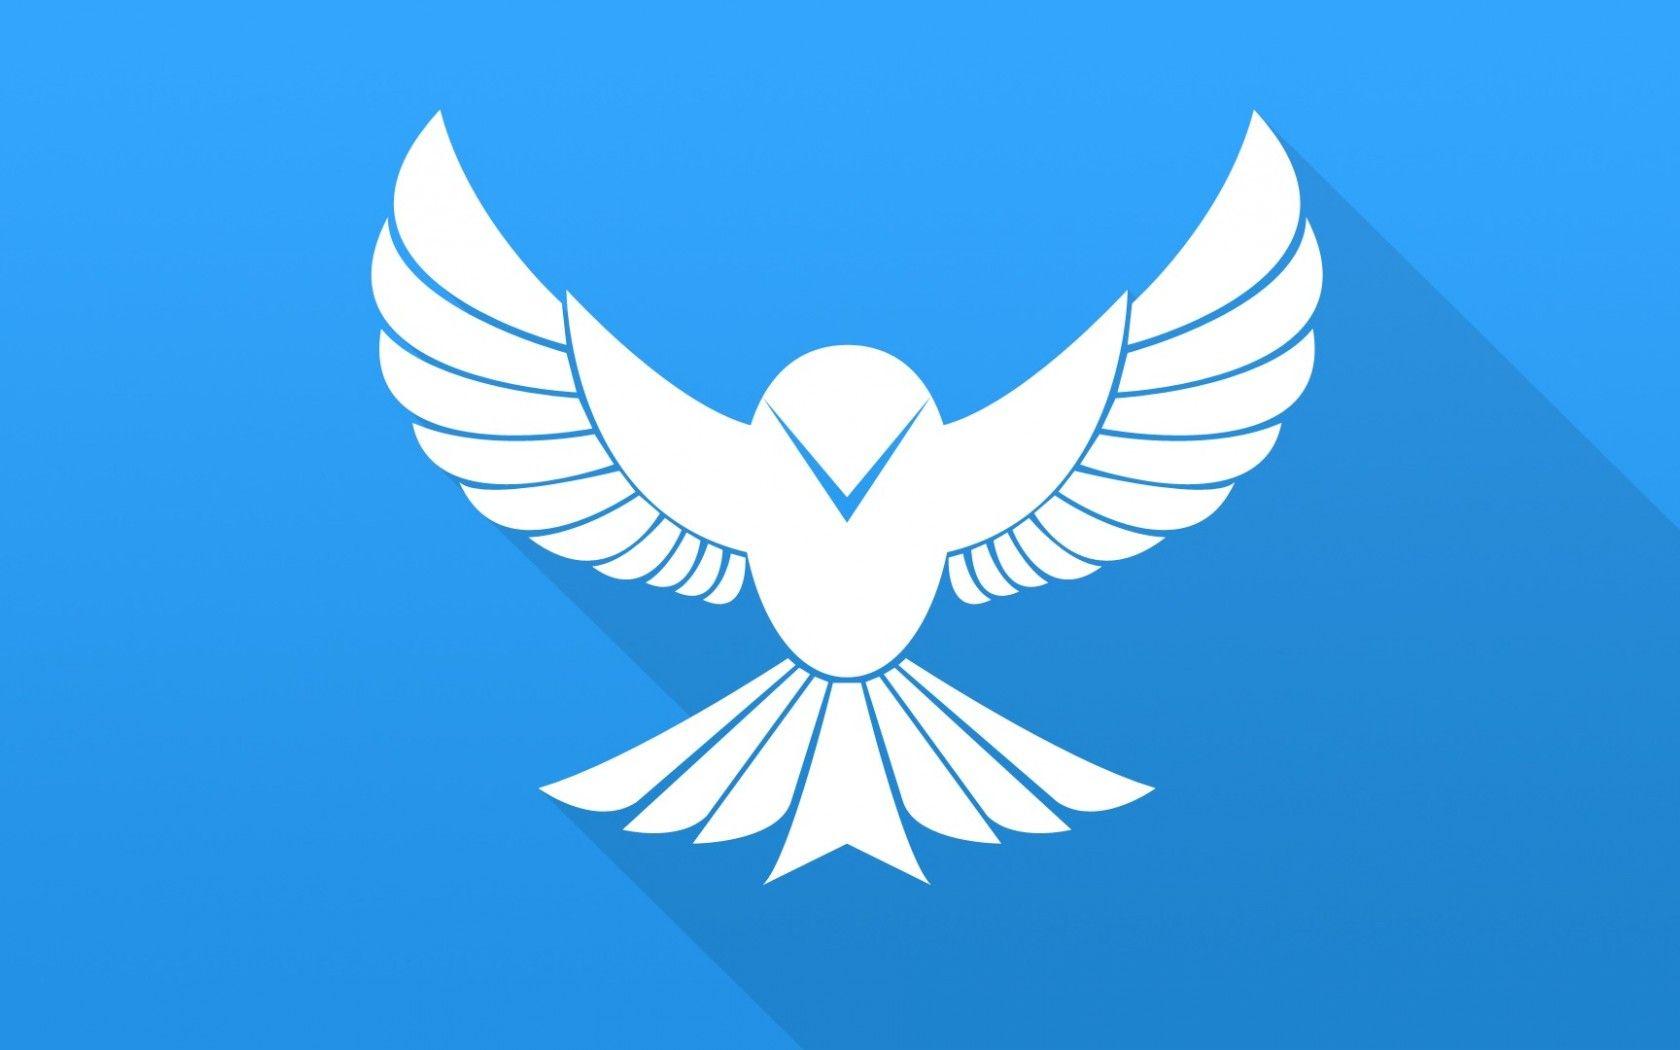 Blue Bird Emblem Logo - Download wallpaper flat, bird, blue, bird, wings, vector, minimalism